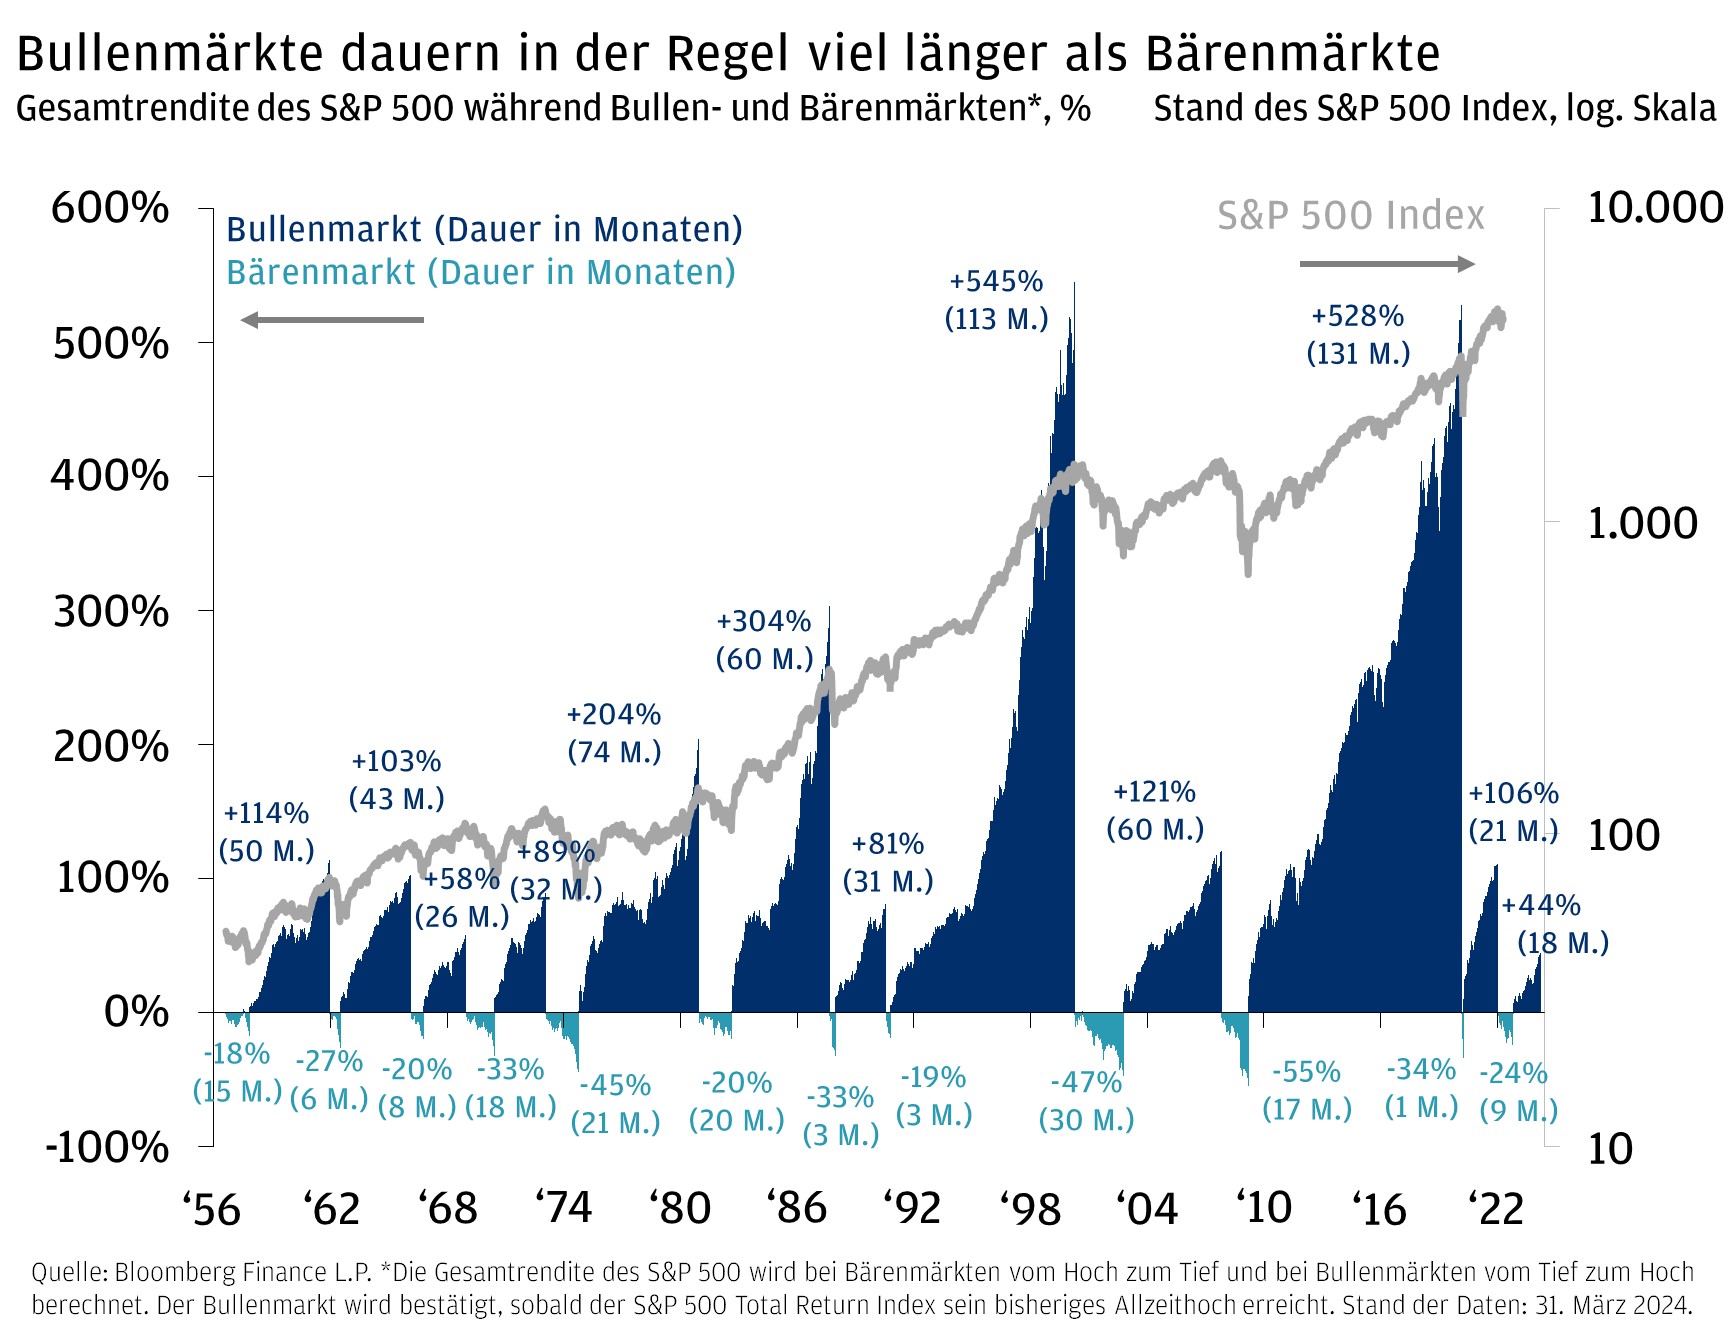 Dieses Diagramm zeigt die Gesamtrendite des S&P 500 während Bullen- und Bärenmärkten und den Stand des S&P 500 Index. 